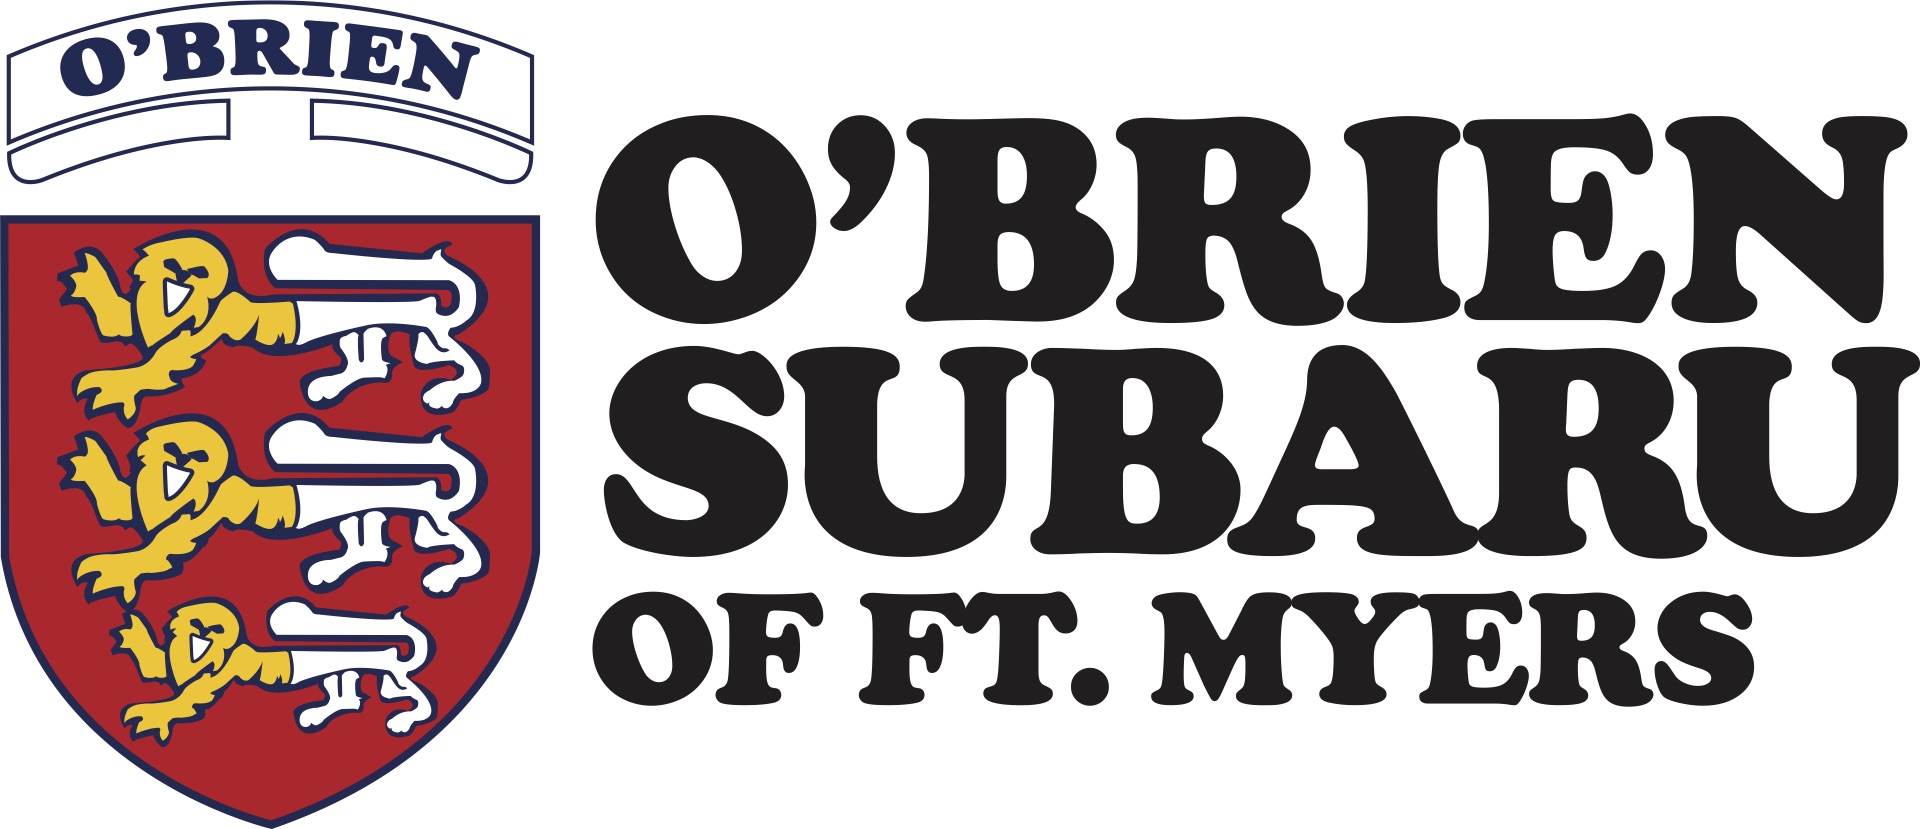 O'Brien Subaru logo.jpg